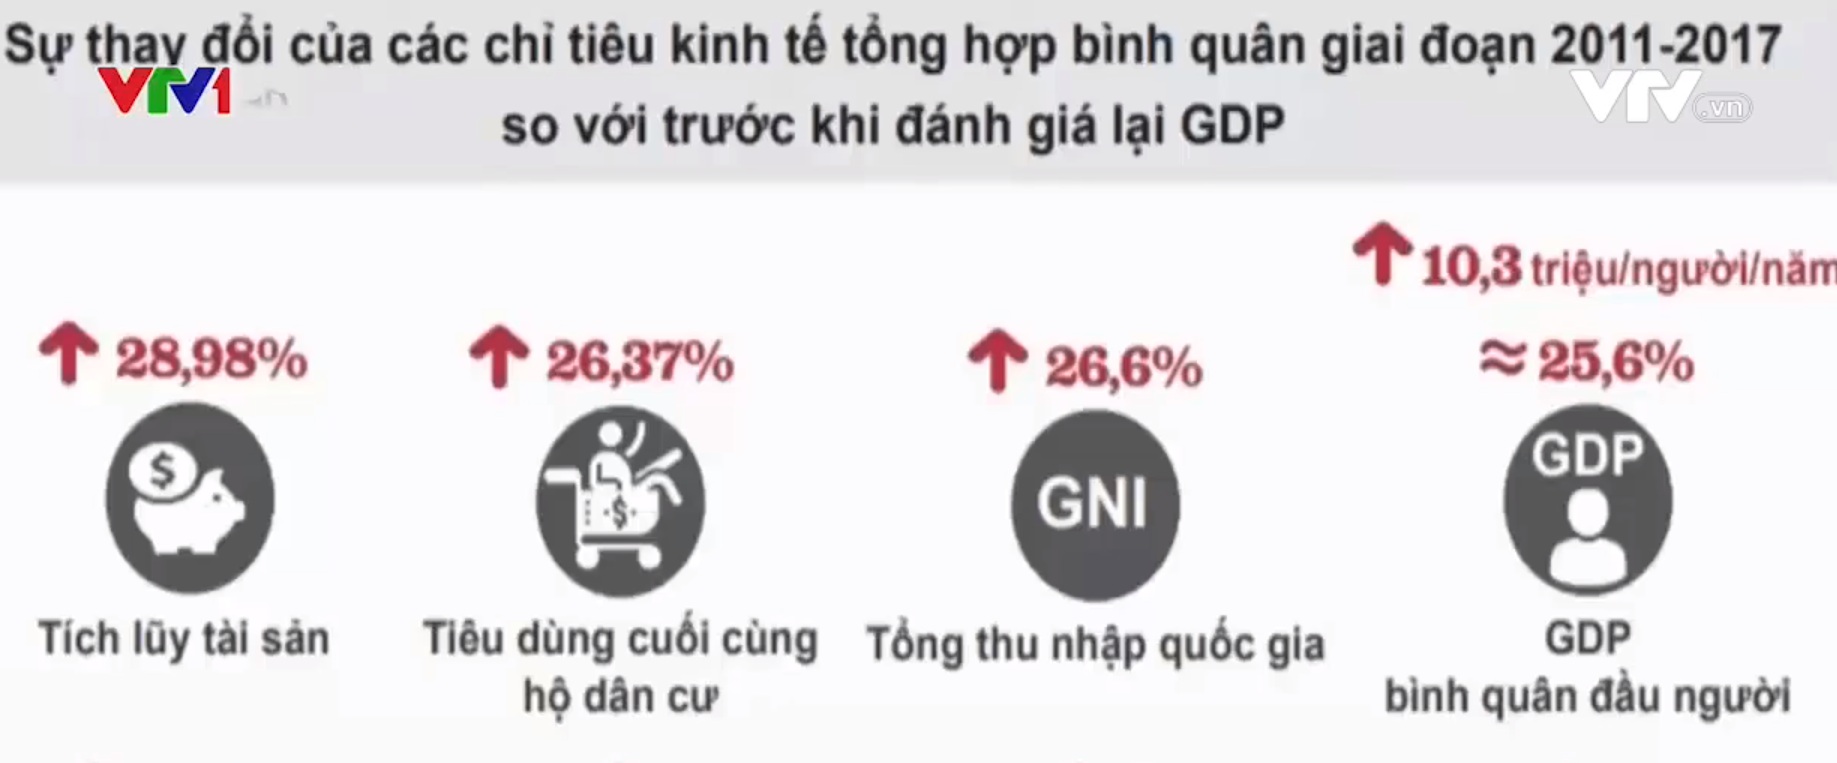 Thu nhập người Việt tăng sau khi đánh giá lại GDP